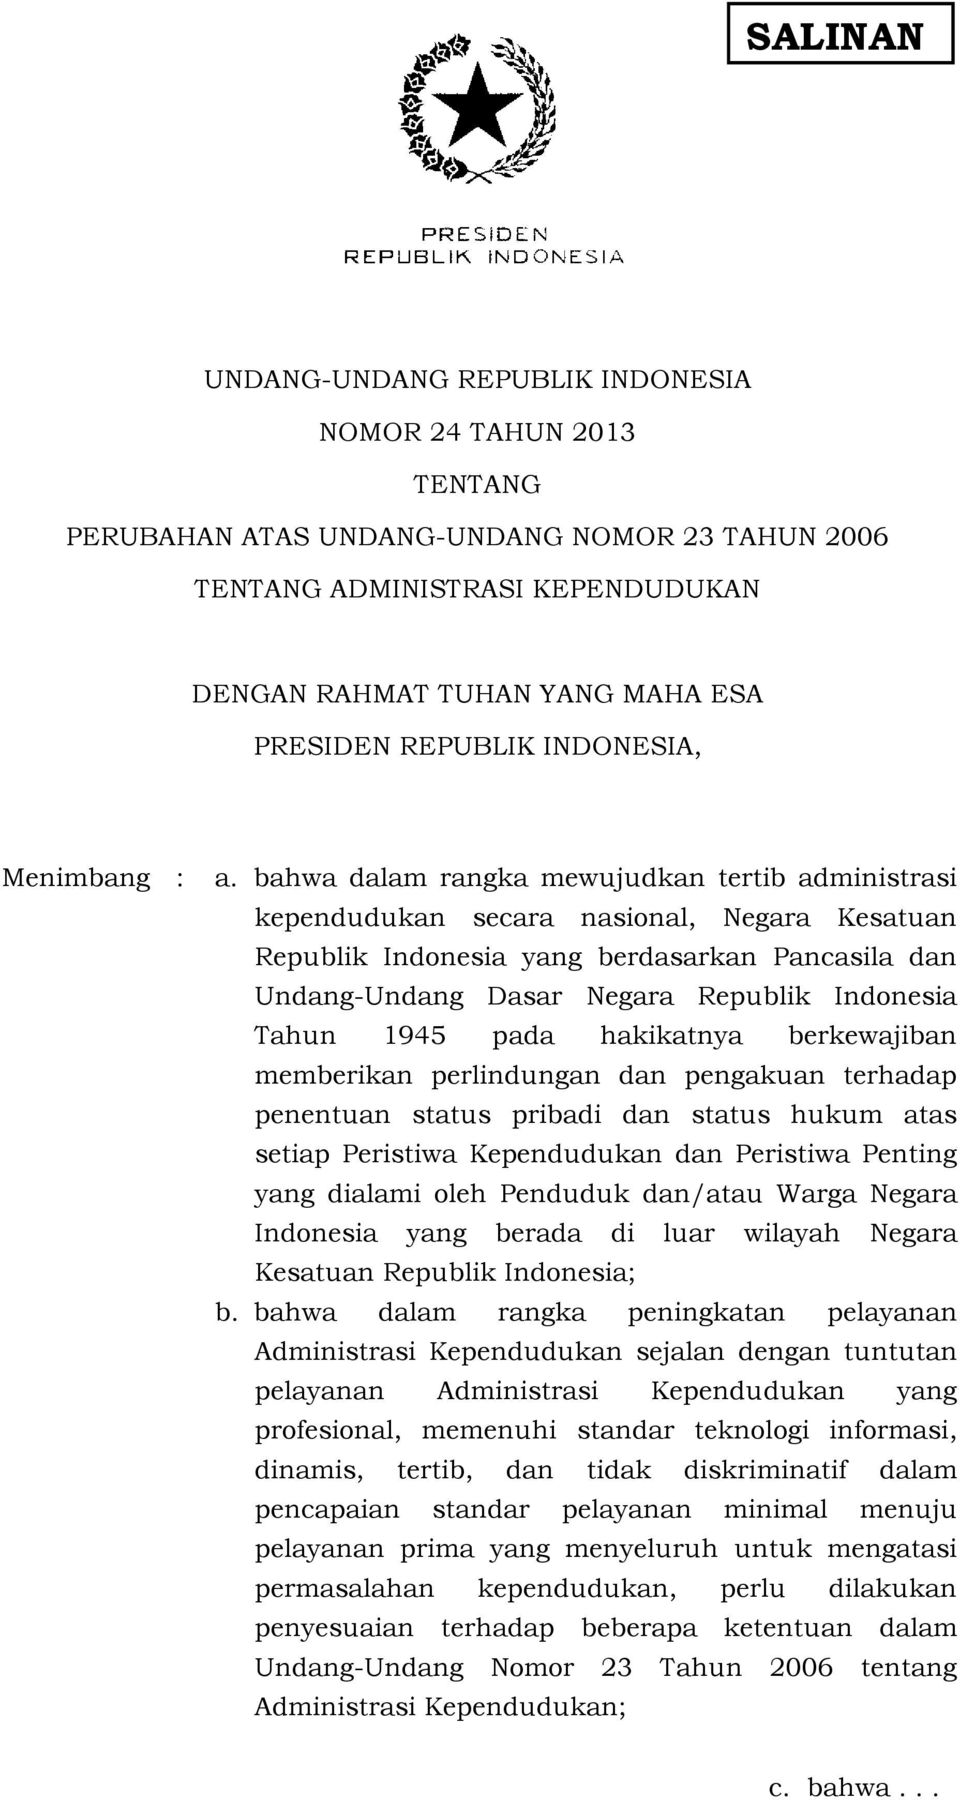 bahwa dalam rangka mewujudkan tertib administrasi kependudukan secara nasional, Negara Kesatuan Republik Indonesia yang berdasarkan Pancasila dan Undang-Undang Dasar Negara Republik Indonesia Tahun